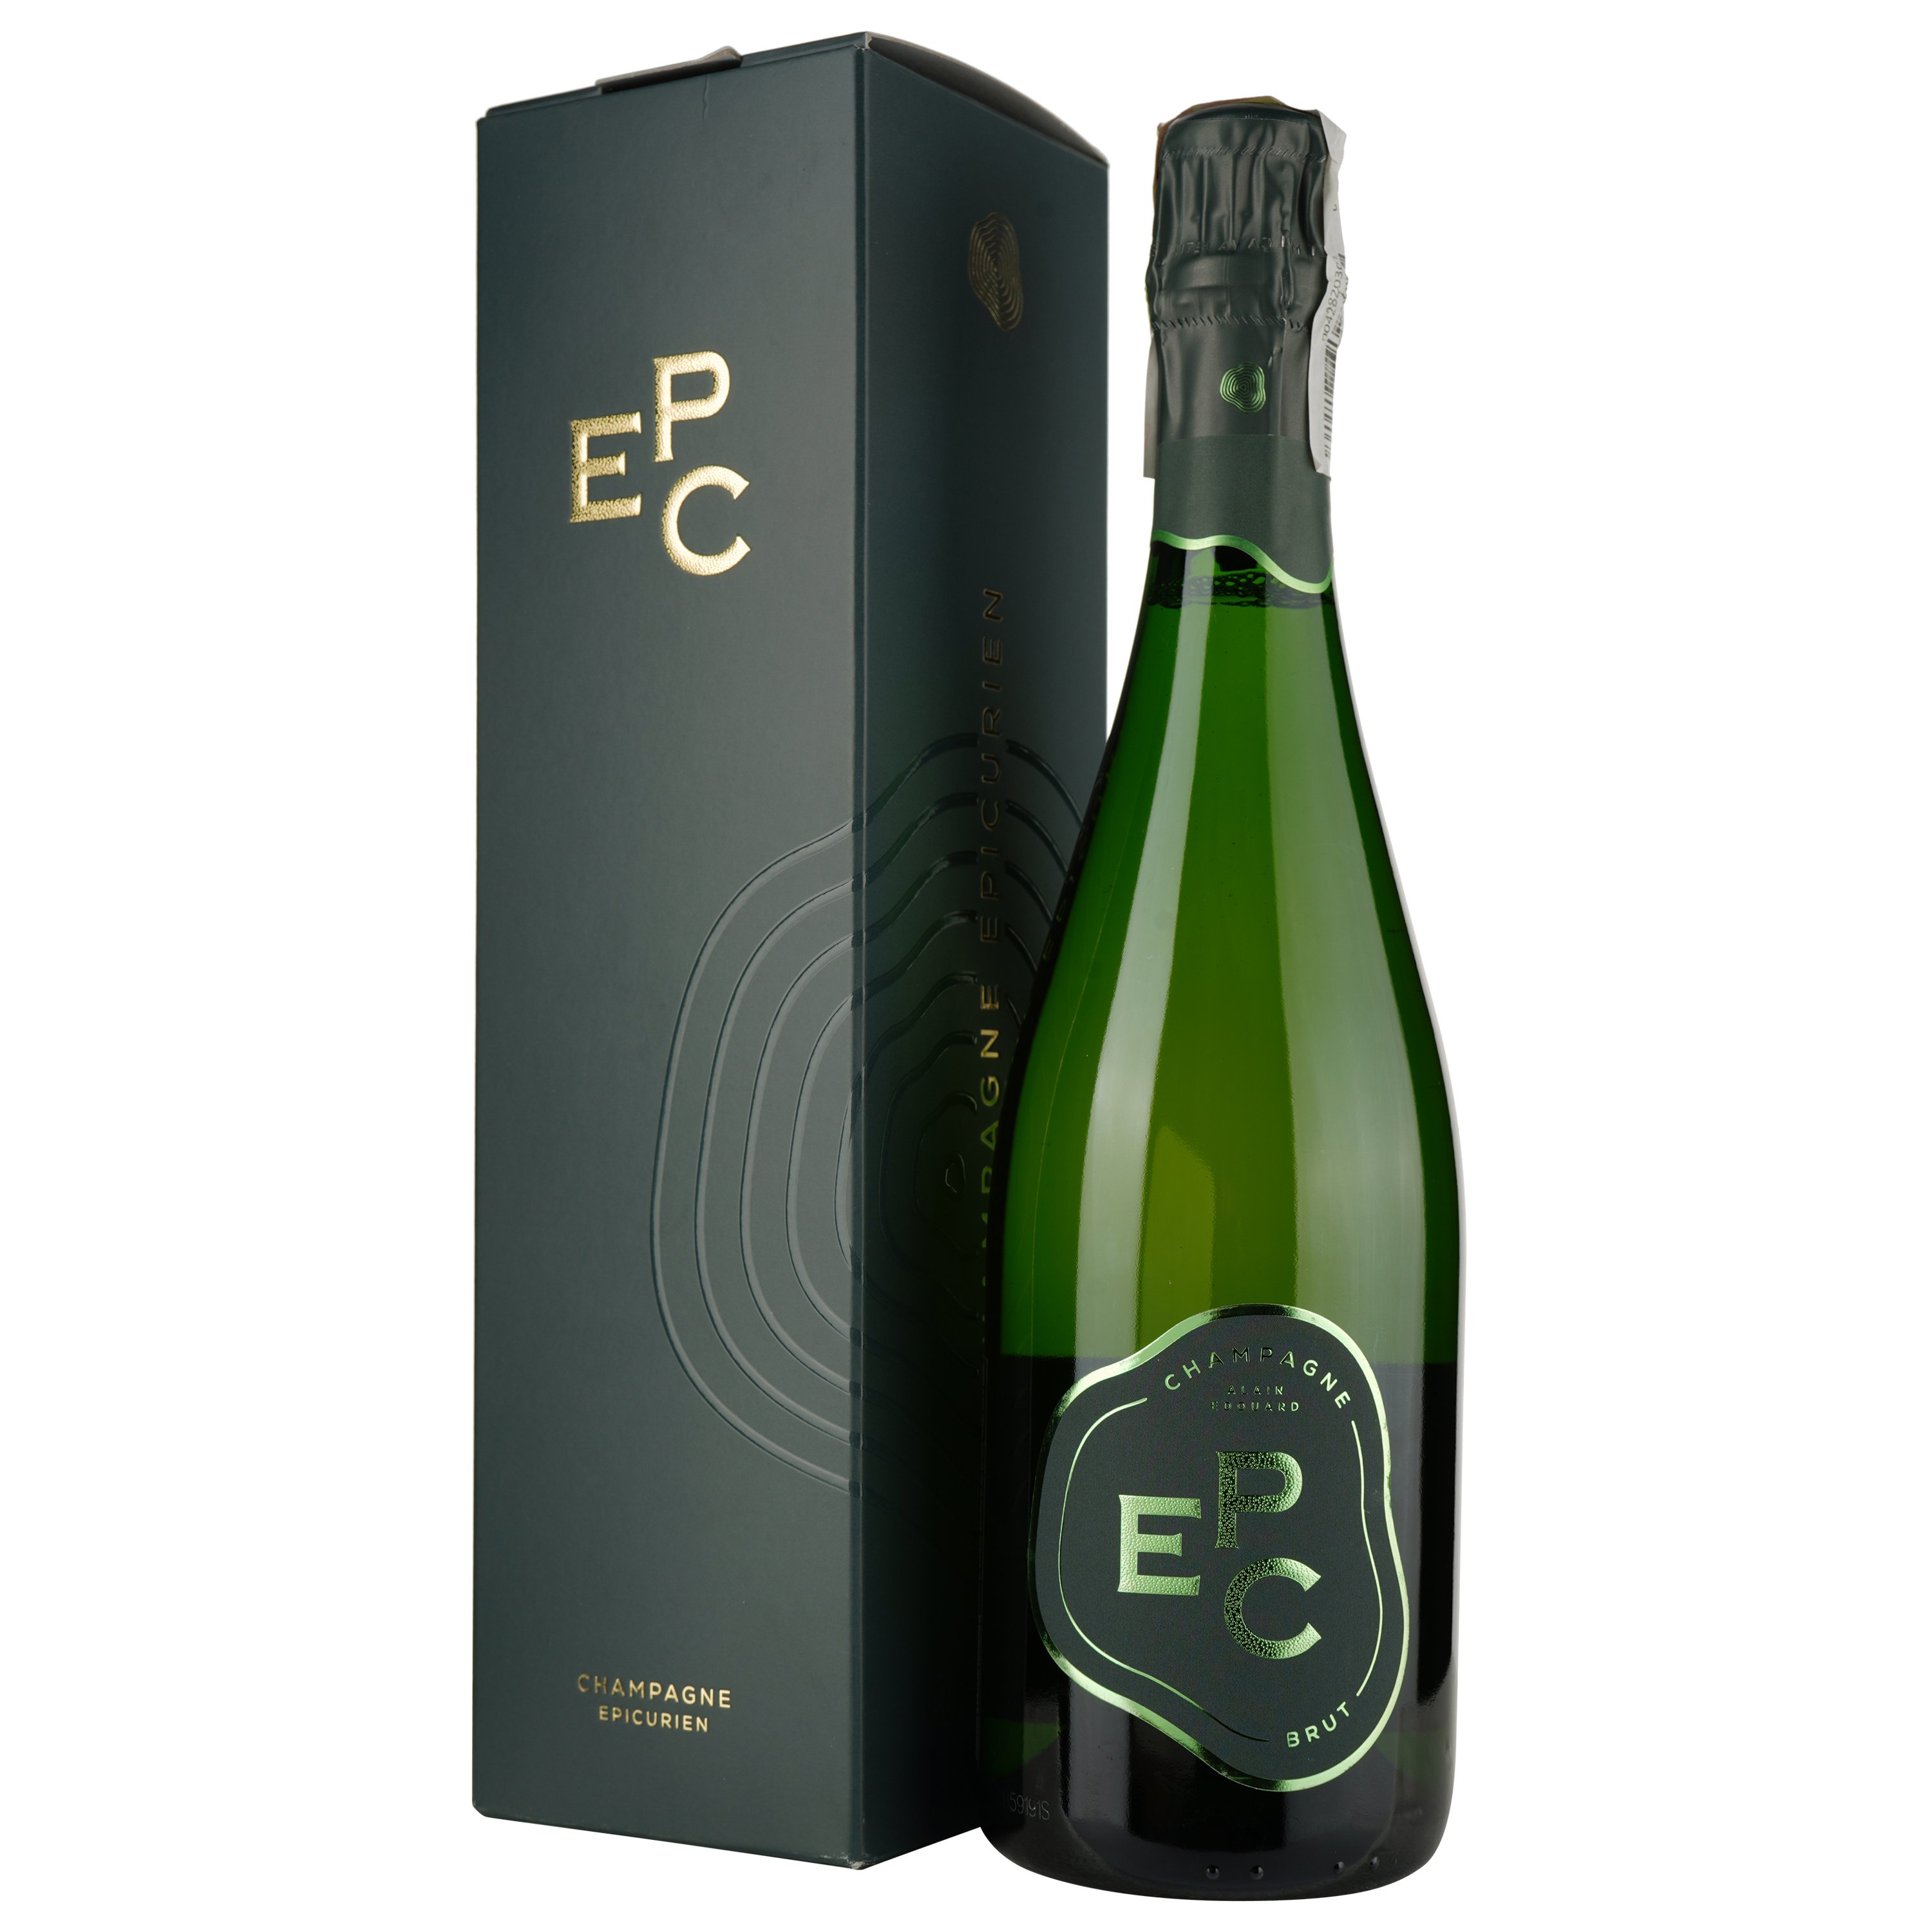 Шампанське Champagne EPC Brut, в подарунковій упаковці, біле, брют, 0,75 л - фото 1